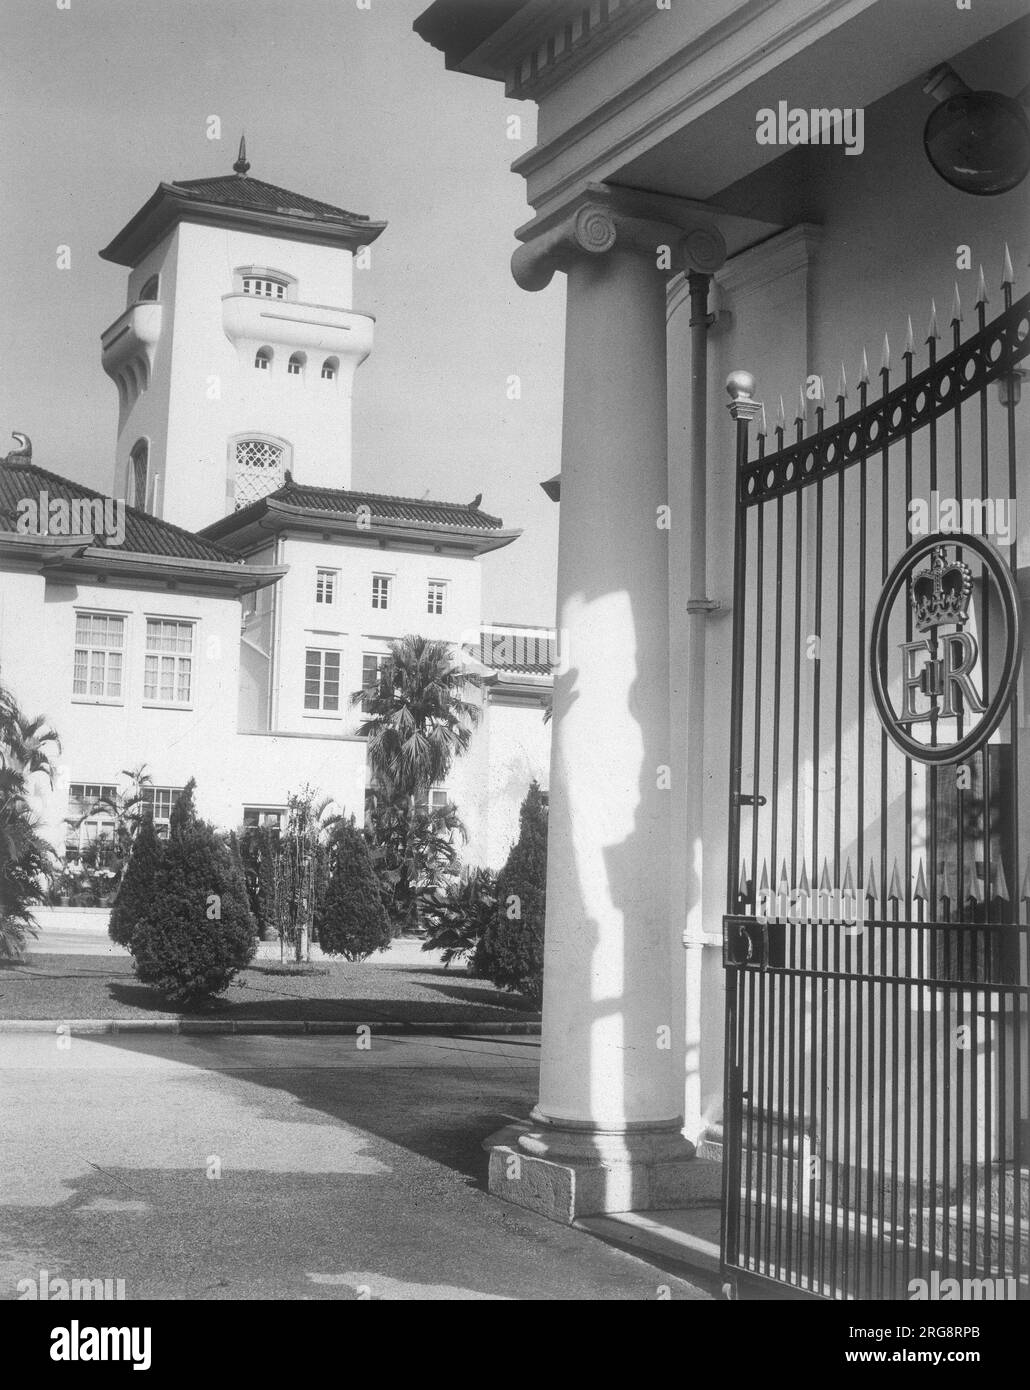 Regierungsgebäude - die Haupttore einschließlich königlicher Abzeichen. Stockfoto